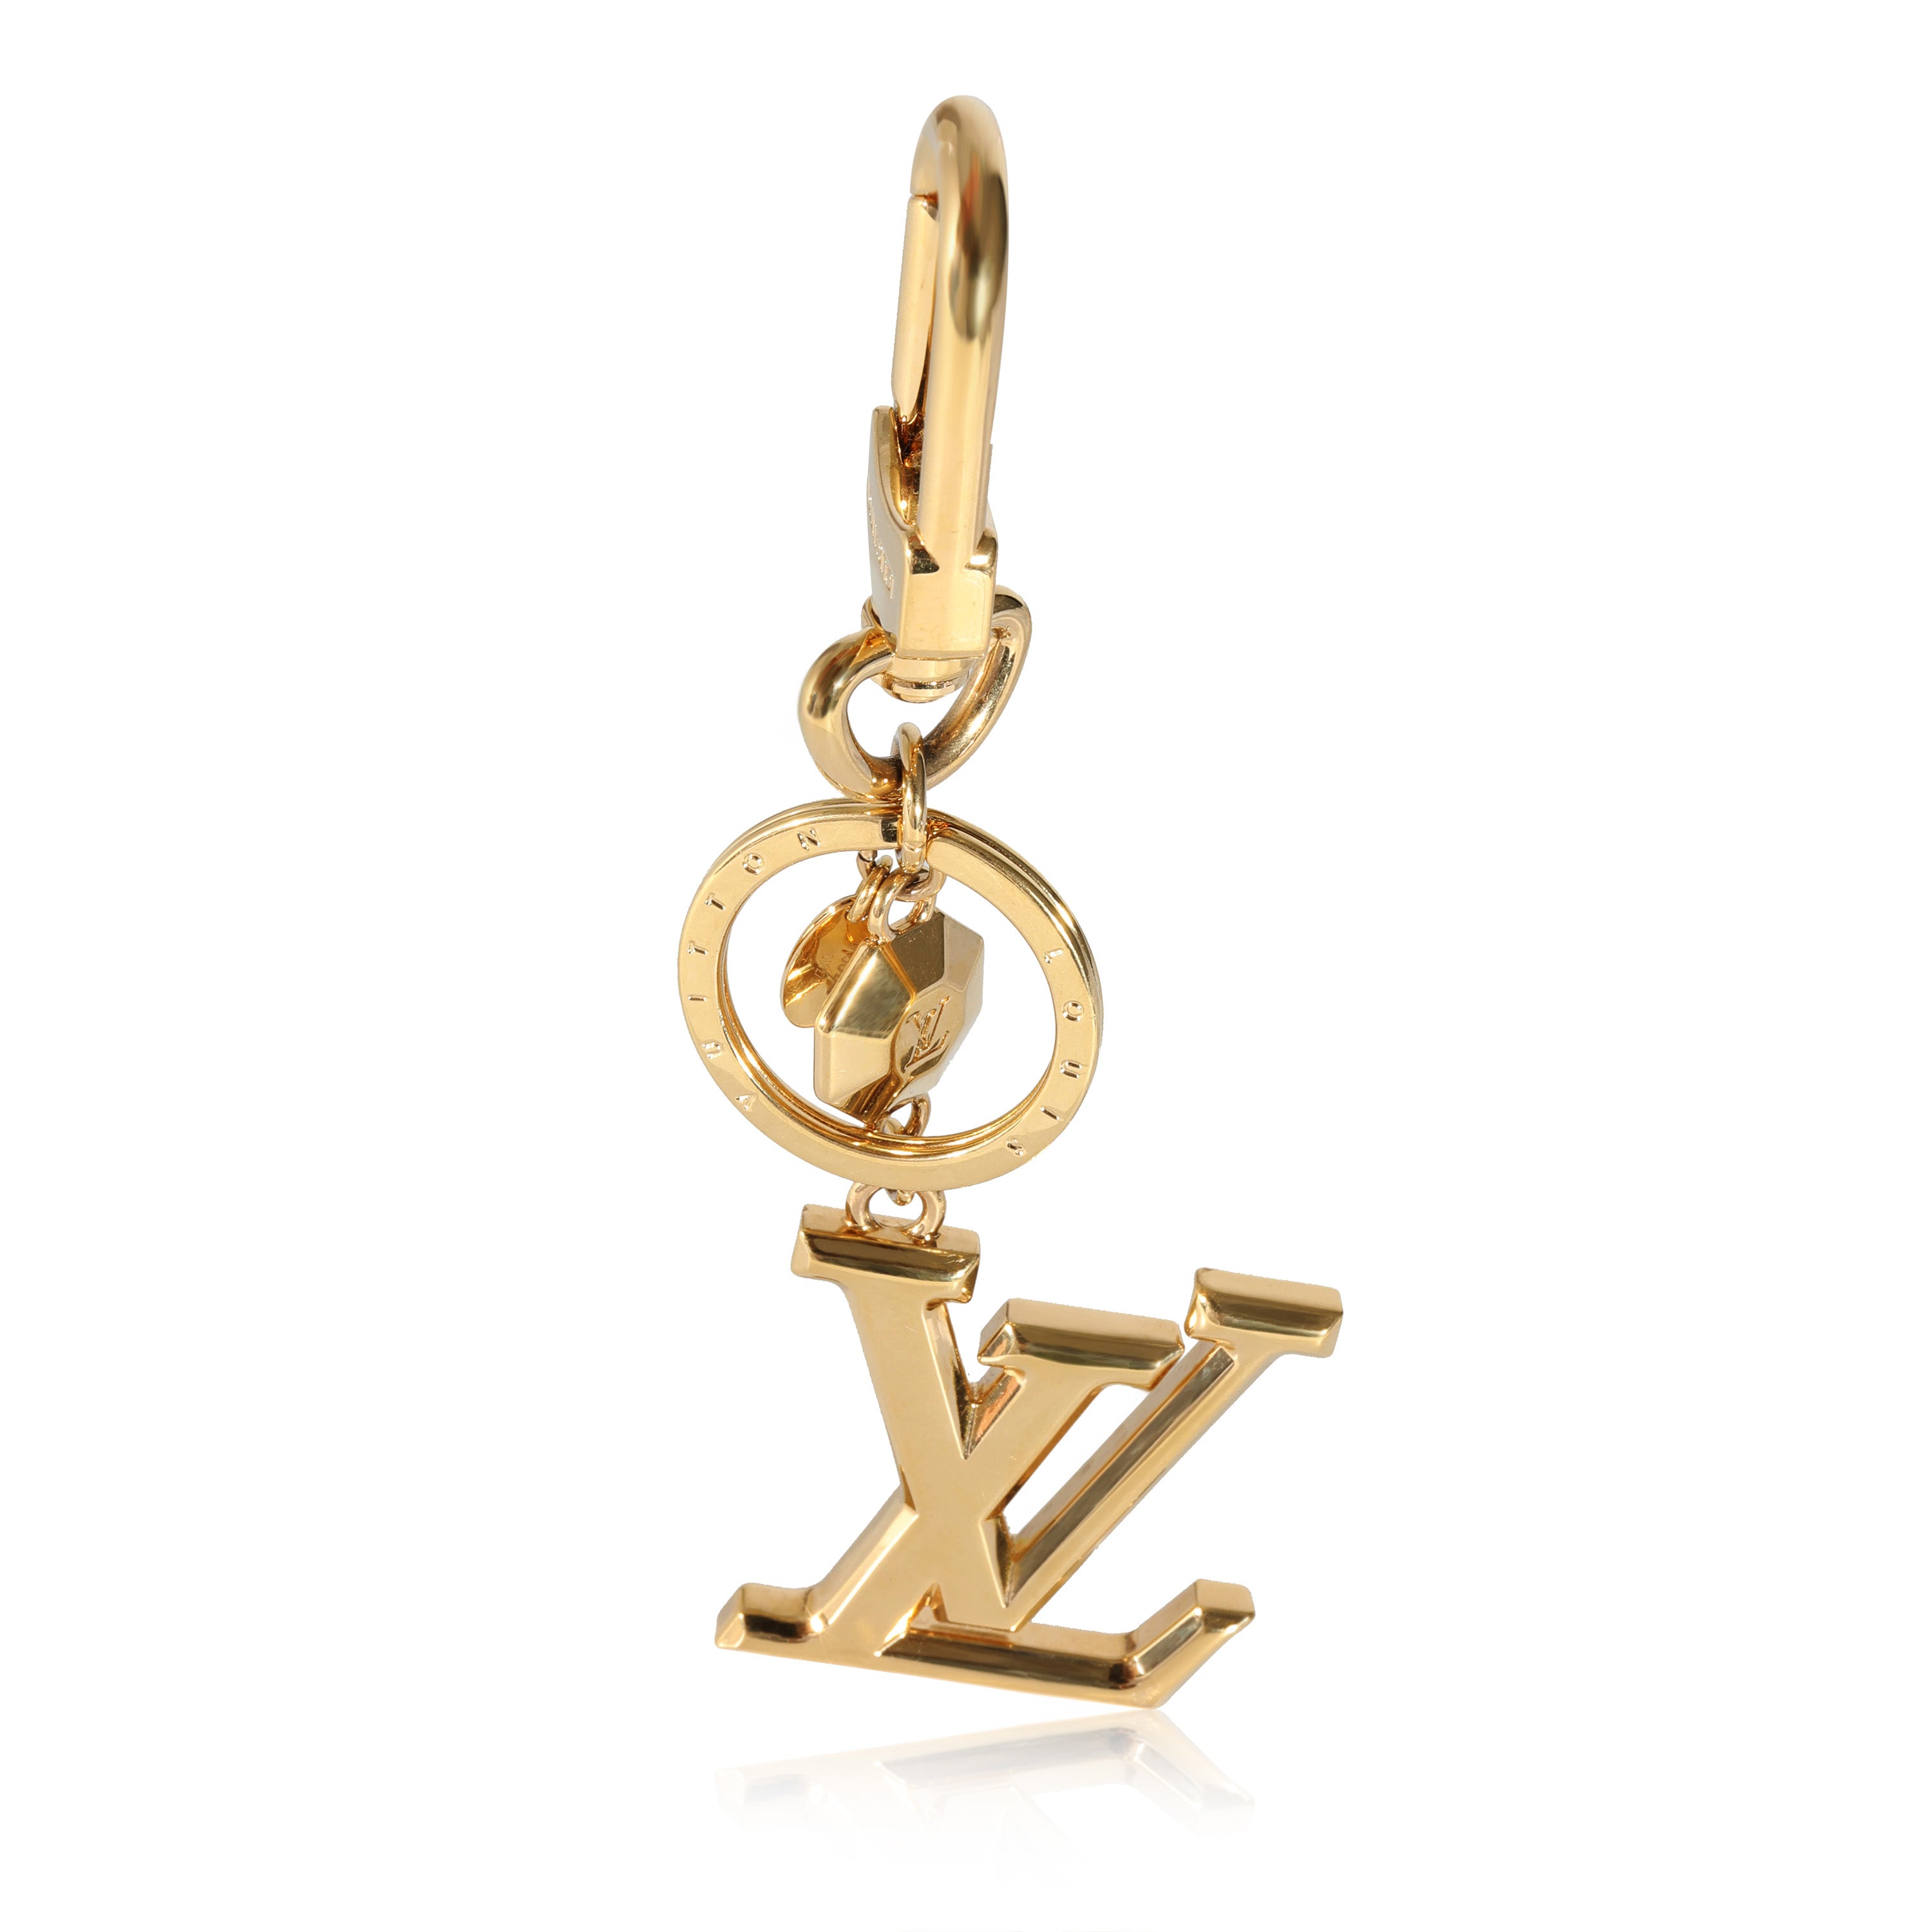 Louis Vuitton Facettes Key Holder / Bag Charm - SOLD